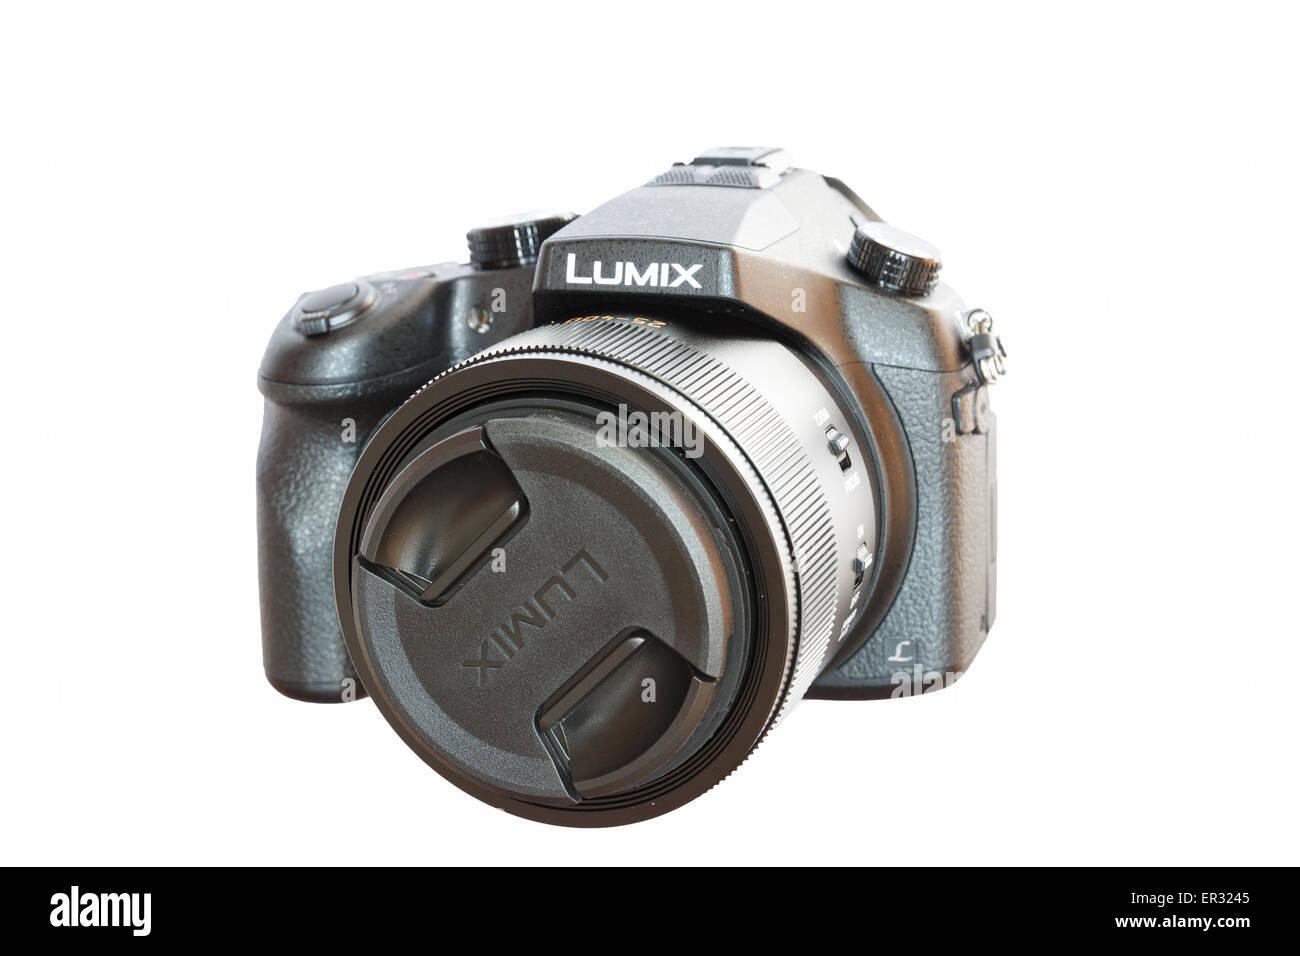 Panasonic lumix dmc hi-res stock photography and images - Alamy